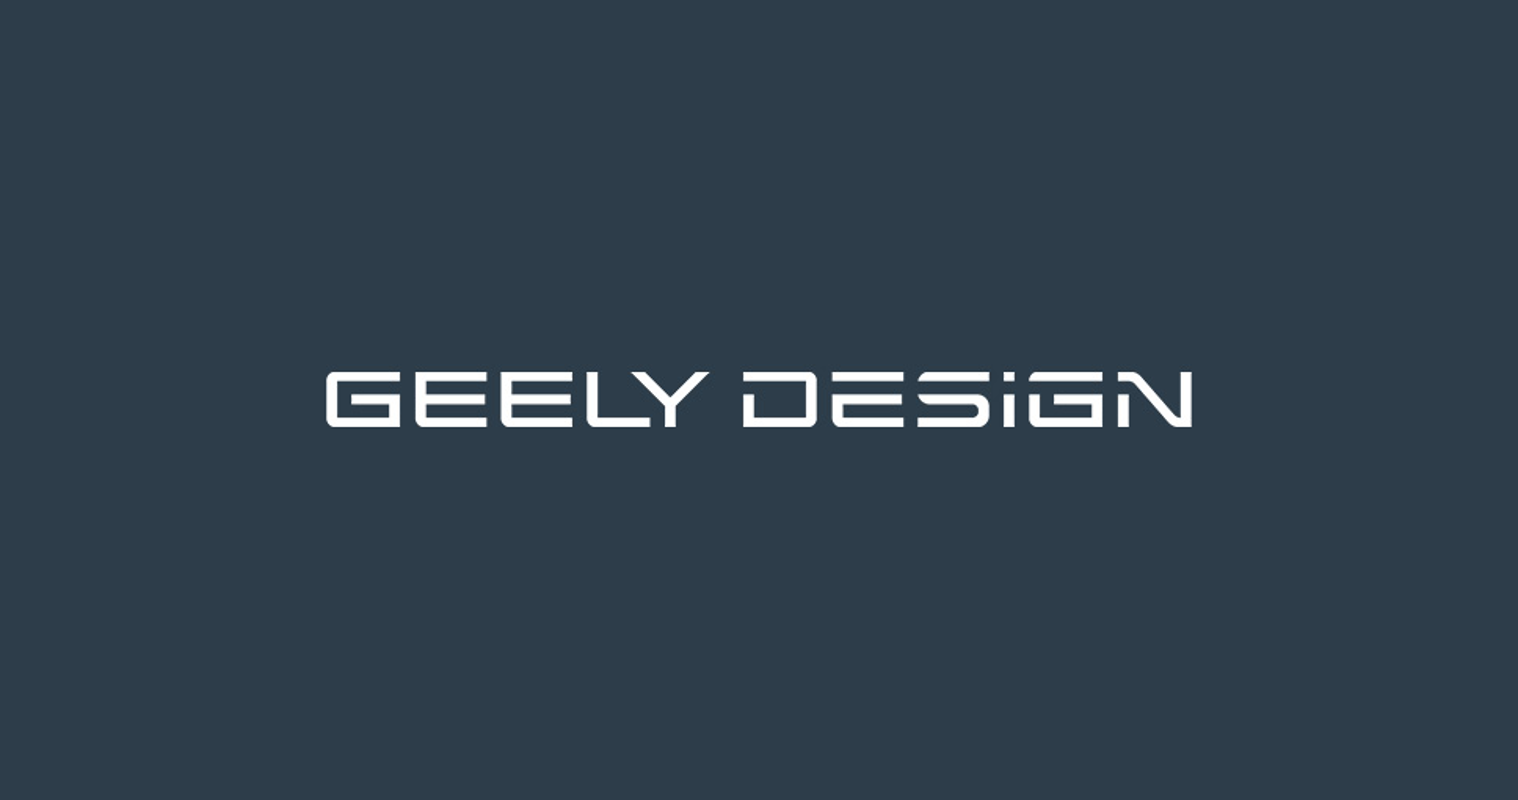 Geely открывает новый дизайн-центр в Милане